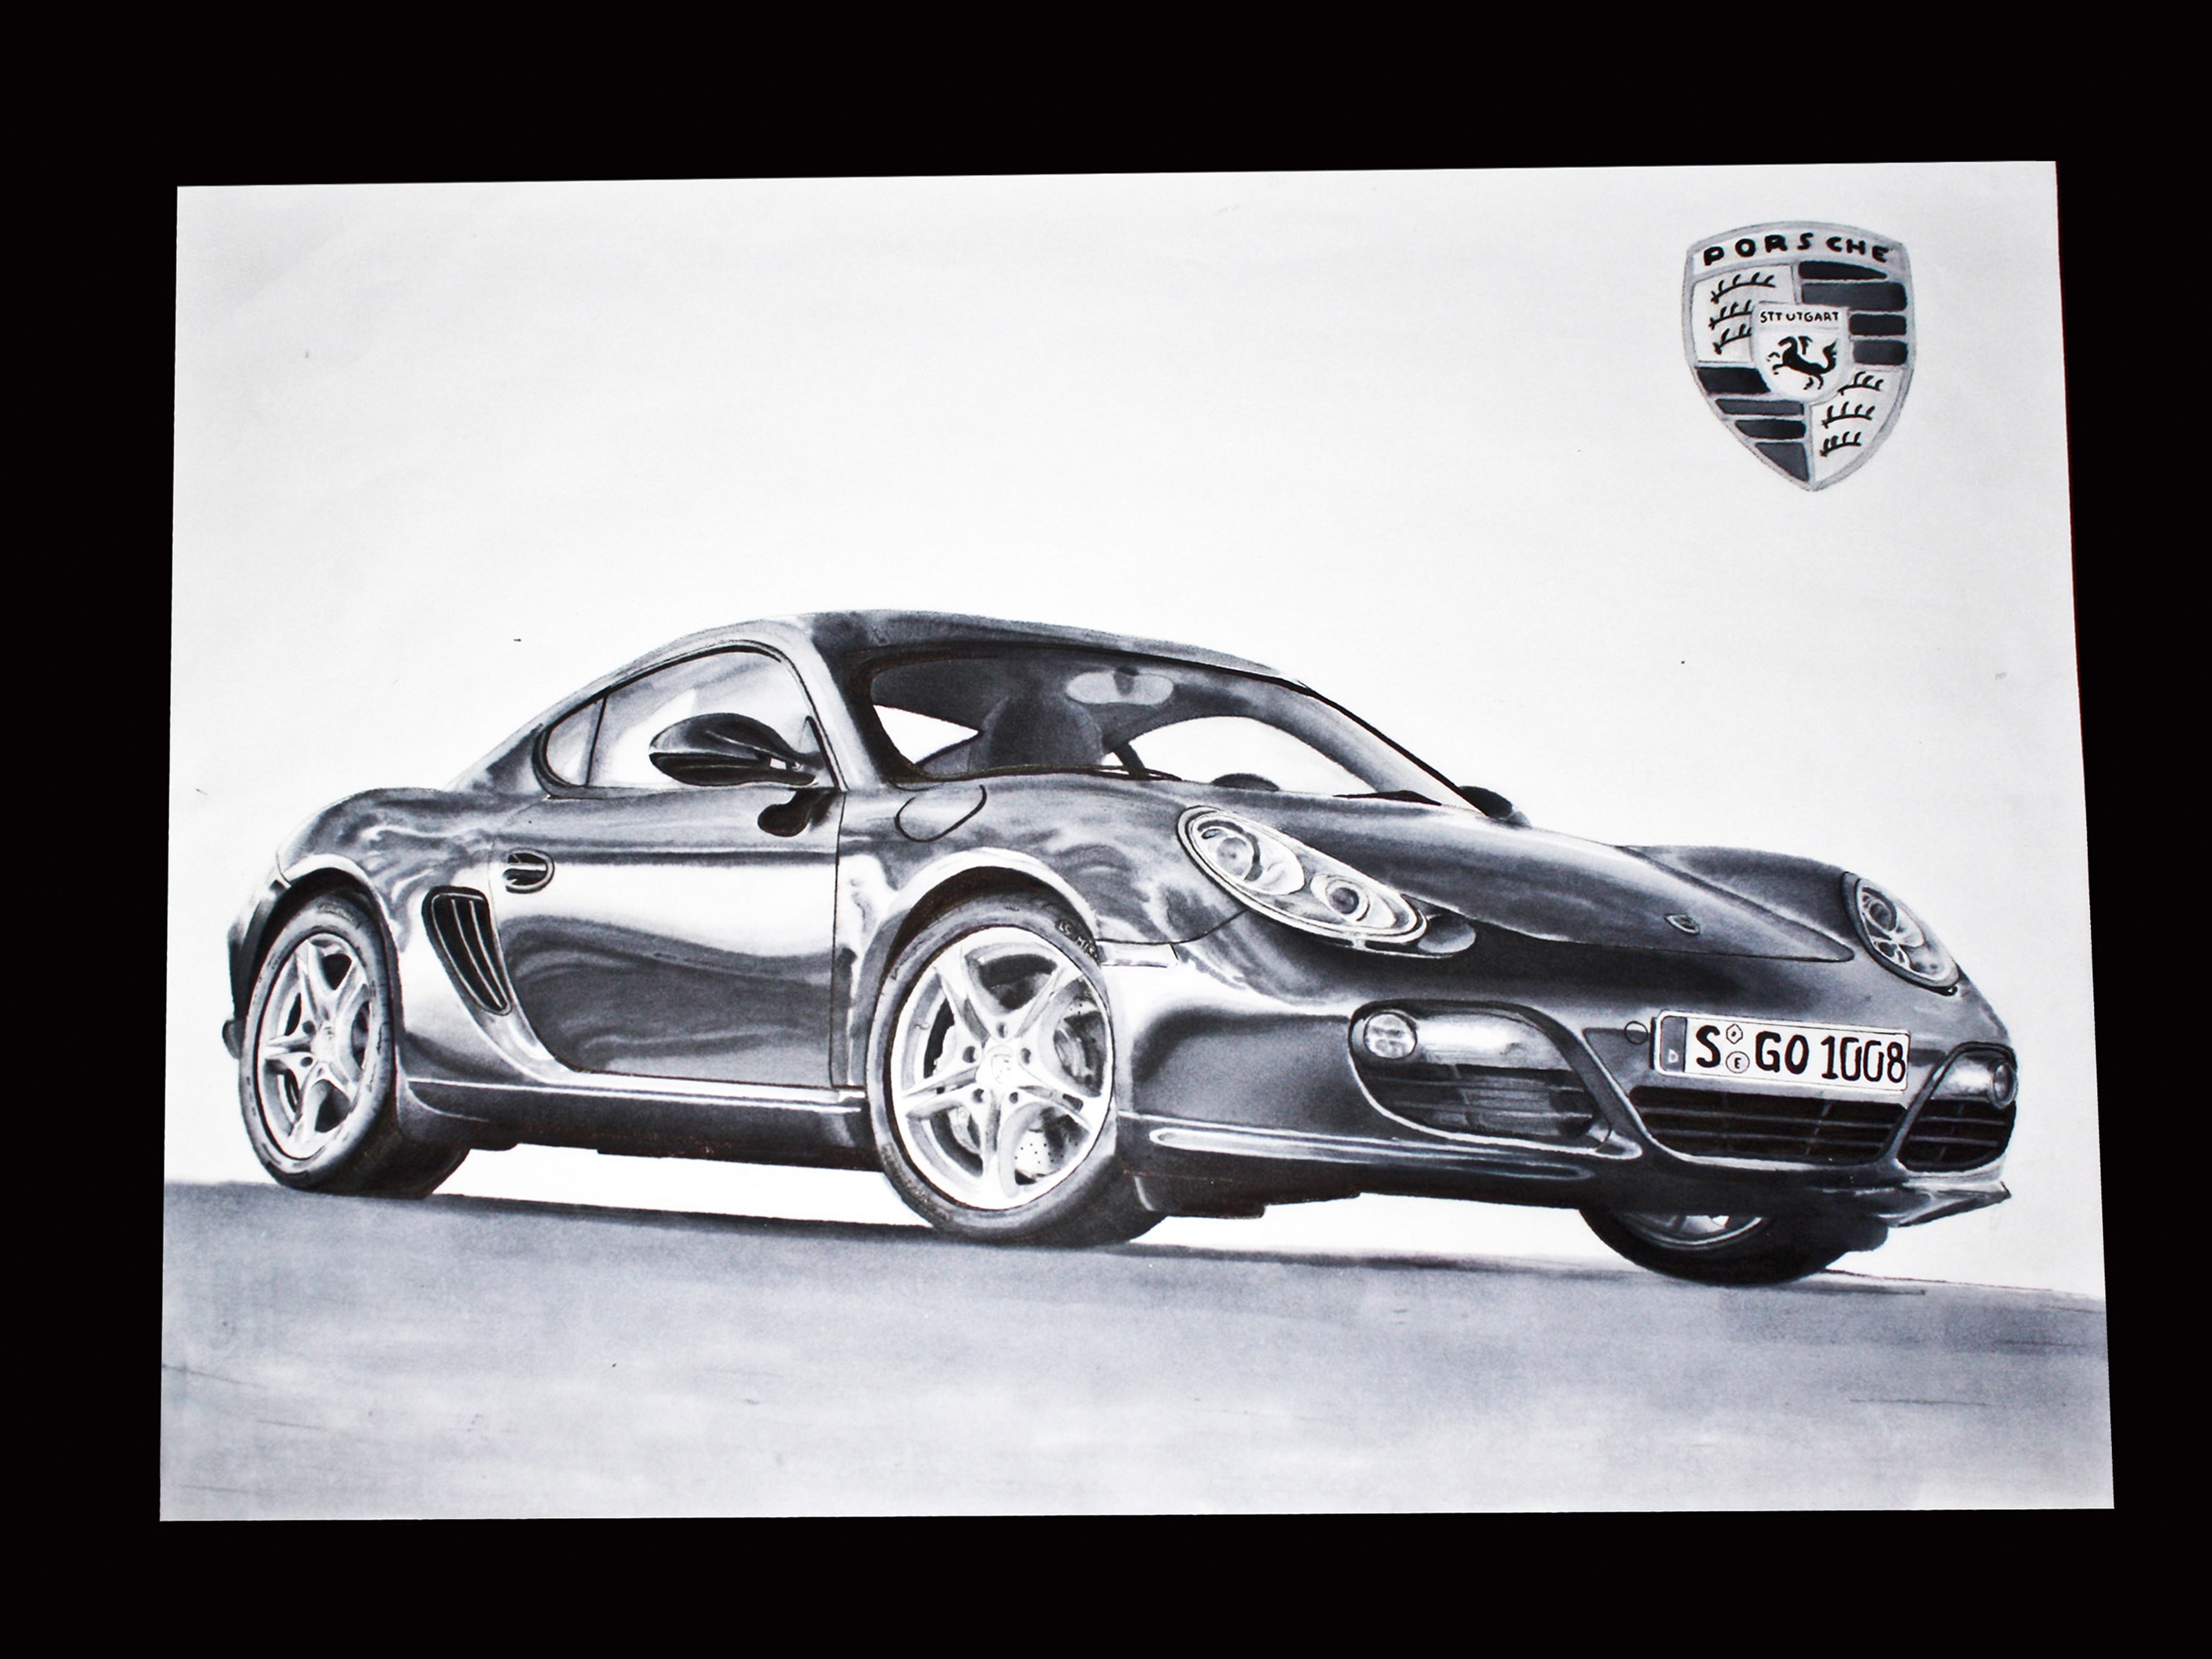 Porsche drawing